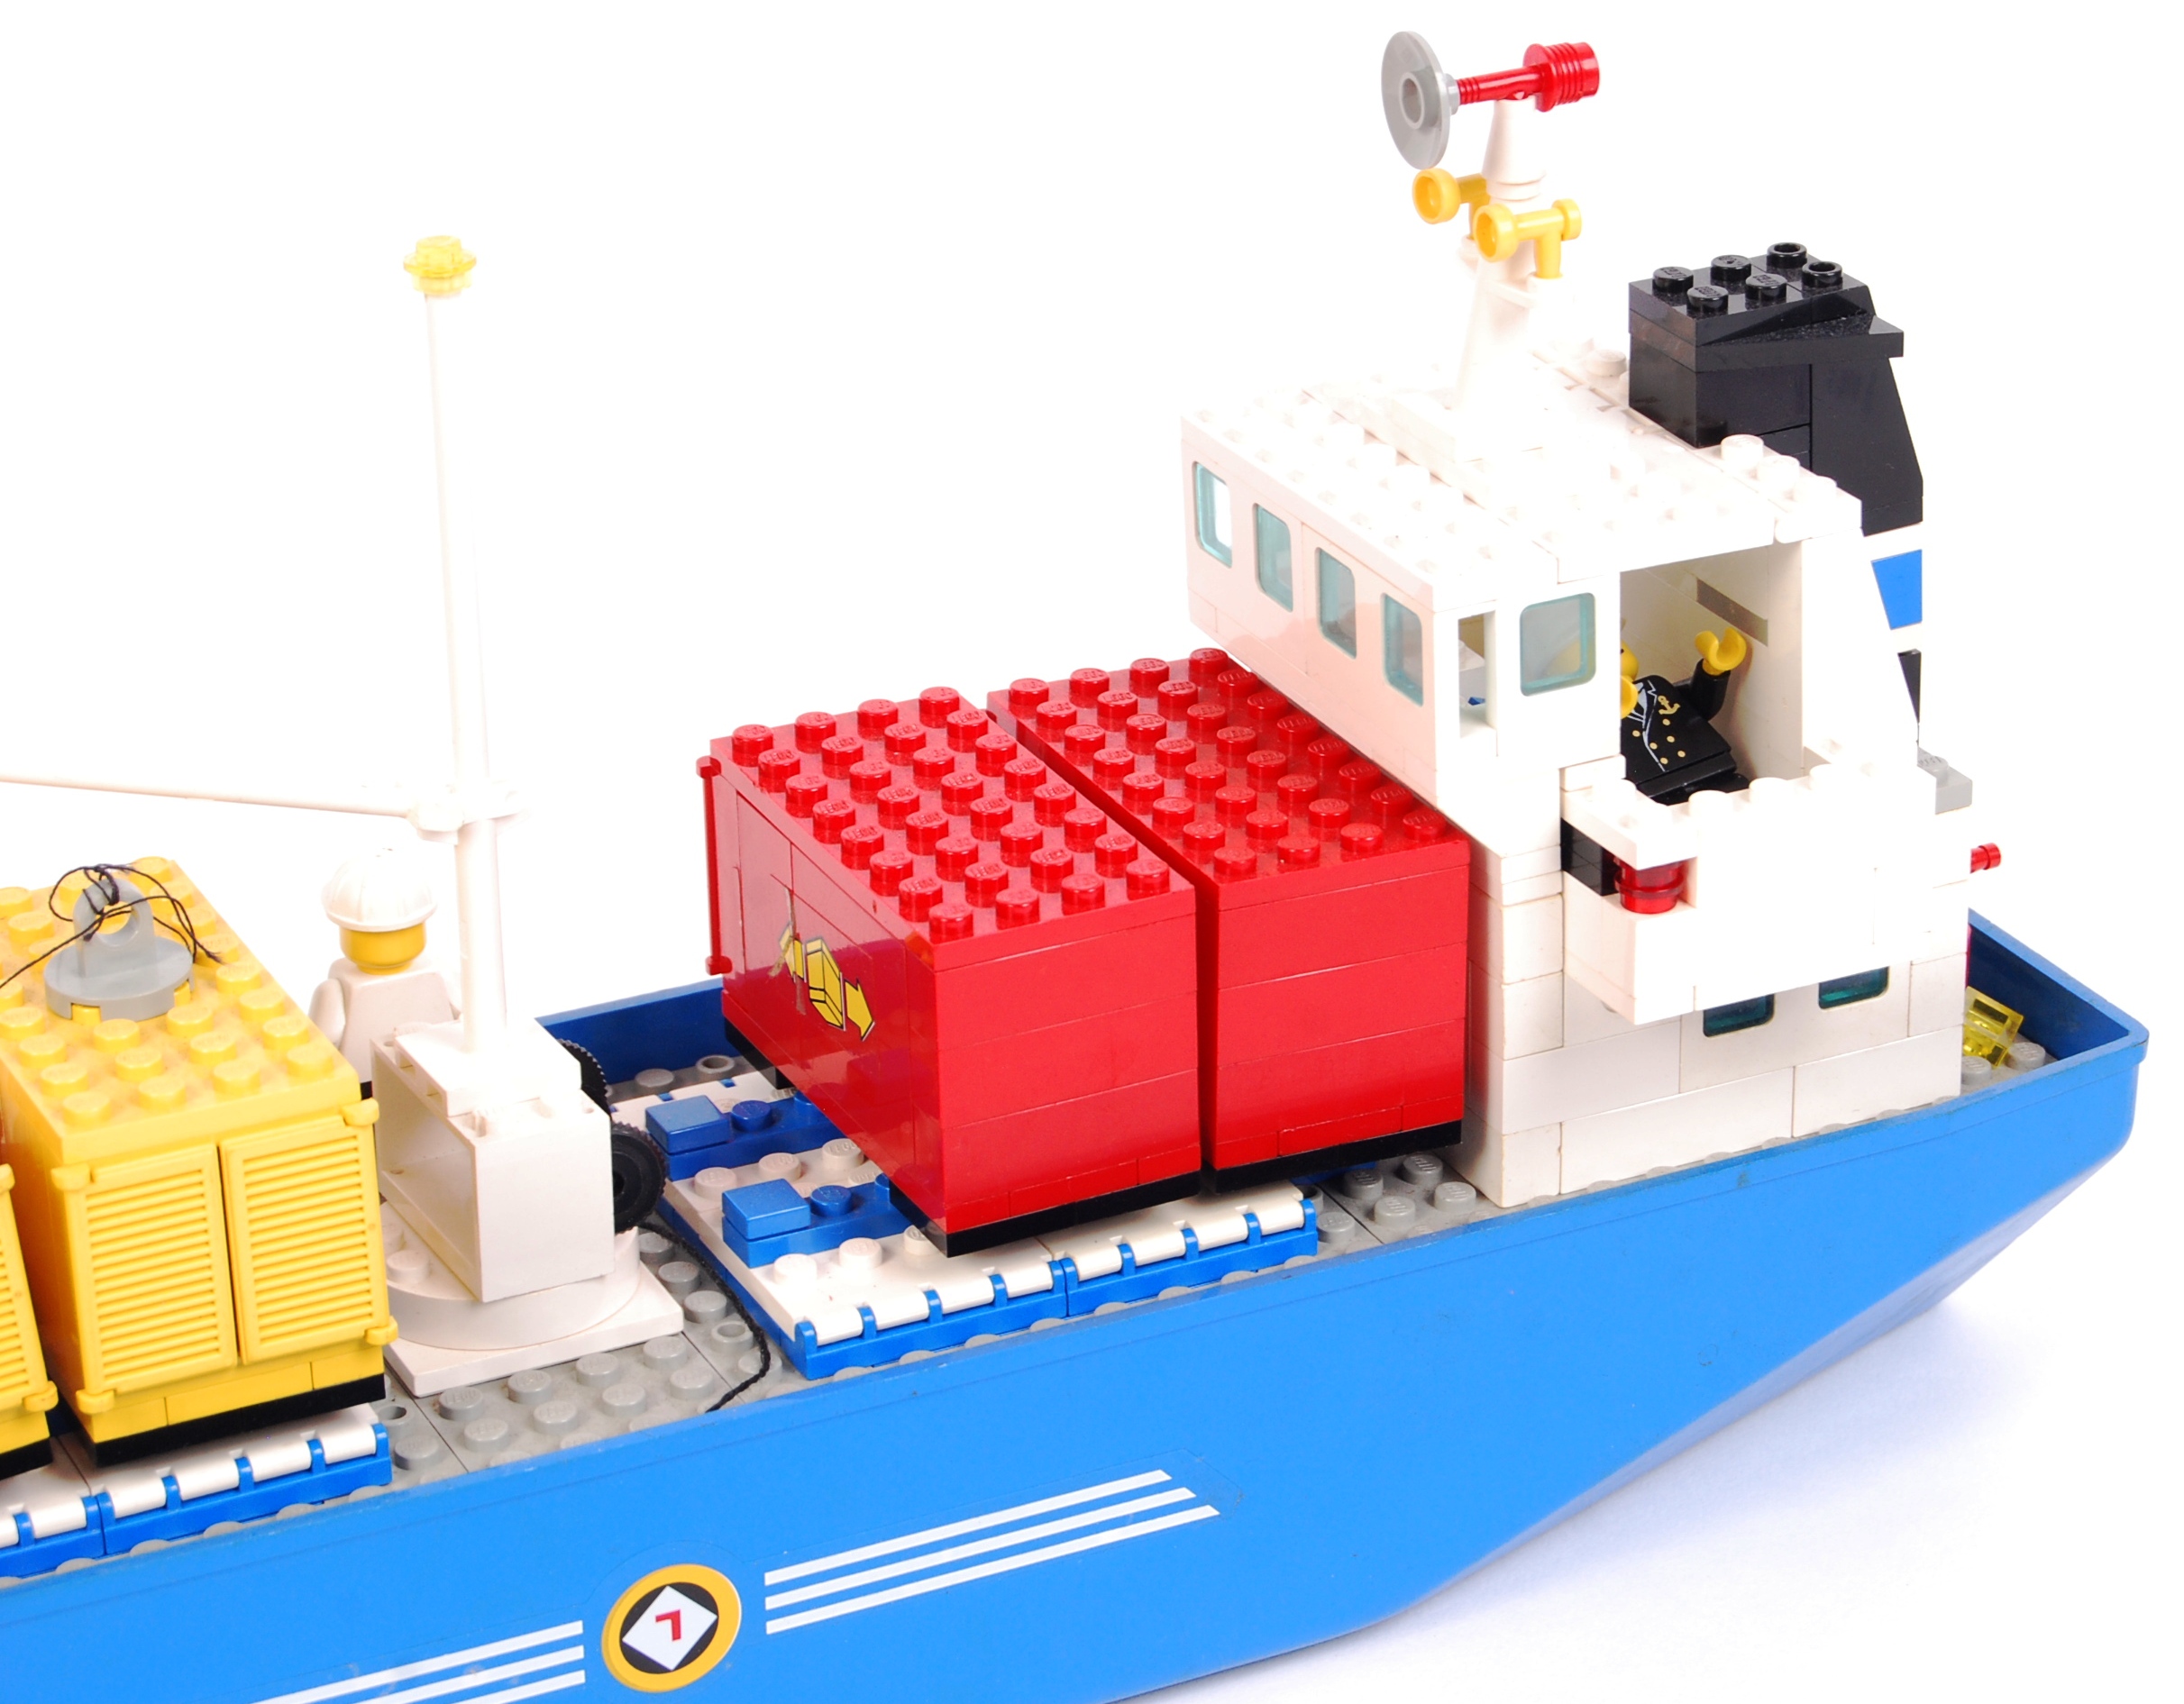 LEGO CARGO SHIP - Image 5 of 5